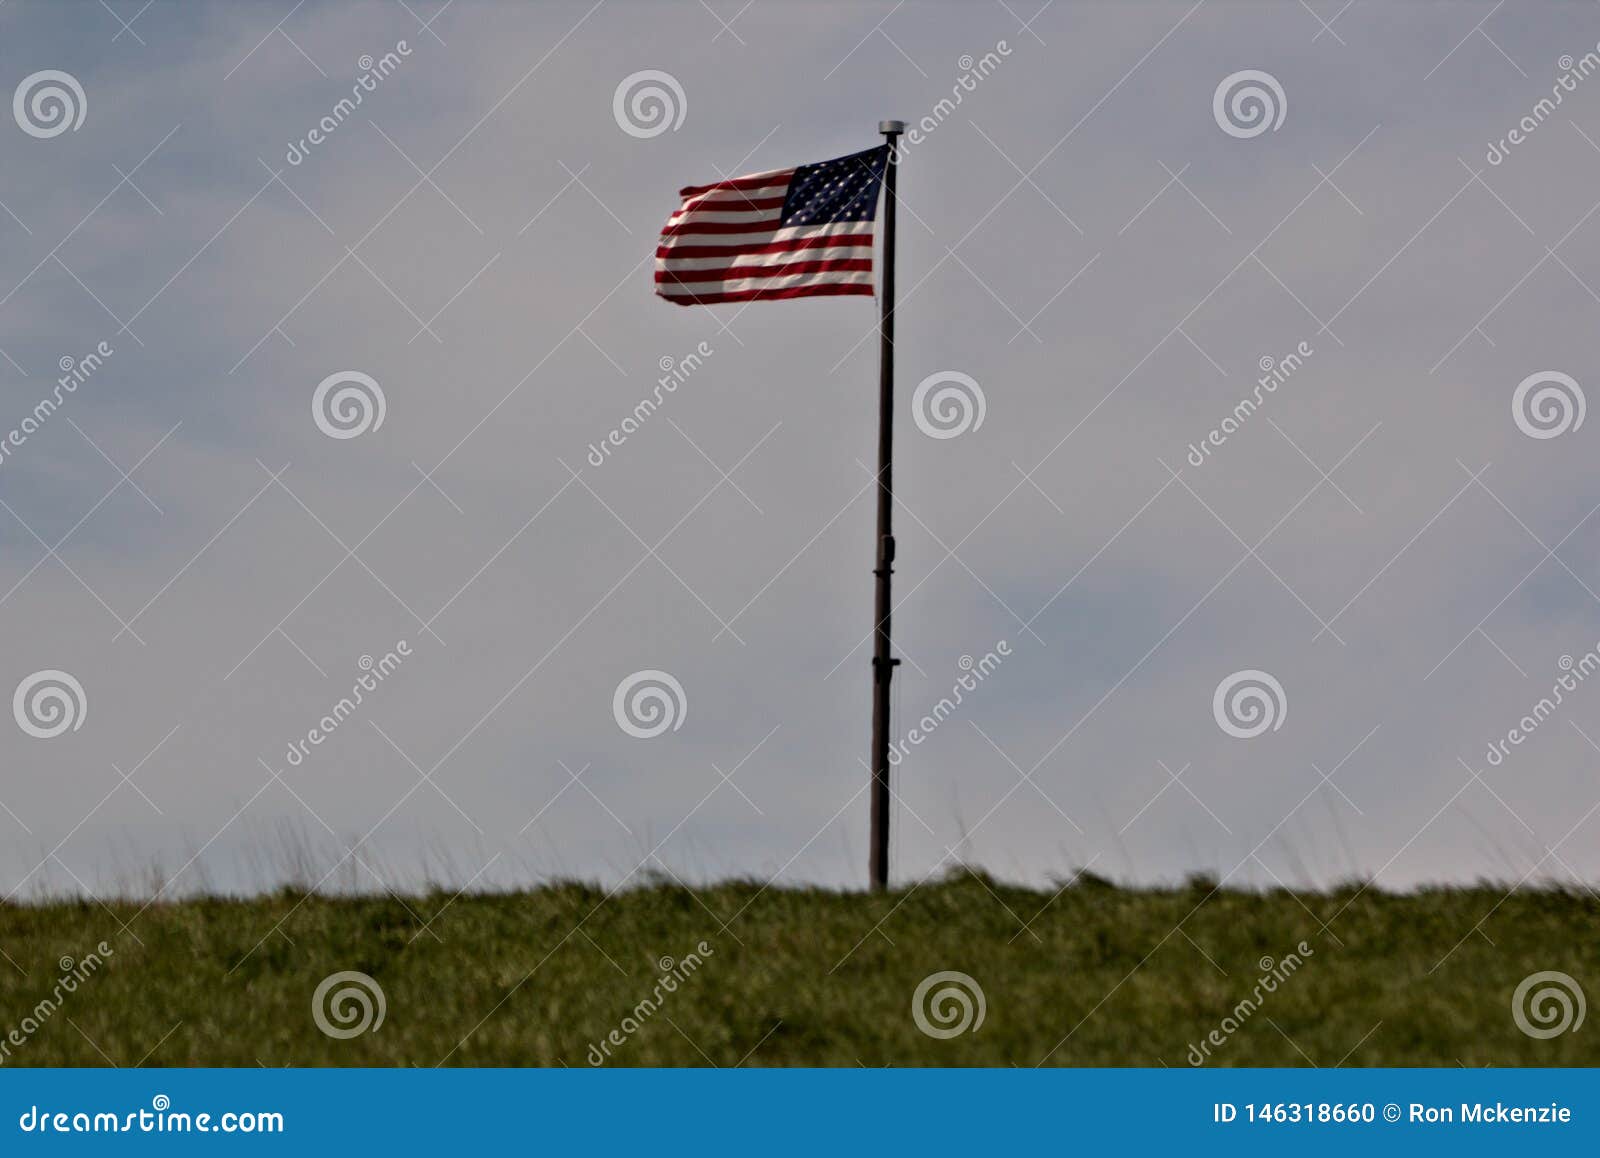 Παλαιά δόξα που πετά στο δύσκαμπτο αεράκι. Αμερικανική σημαία στον αέρα από μια πλευρά λόφων με πέρα από του χυτού ουρανού